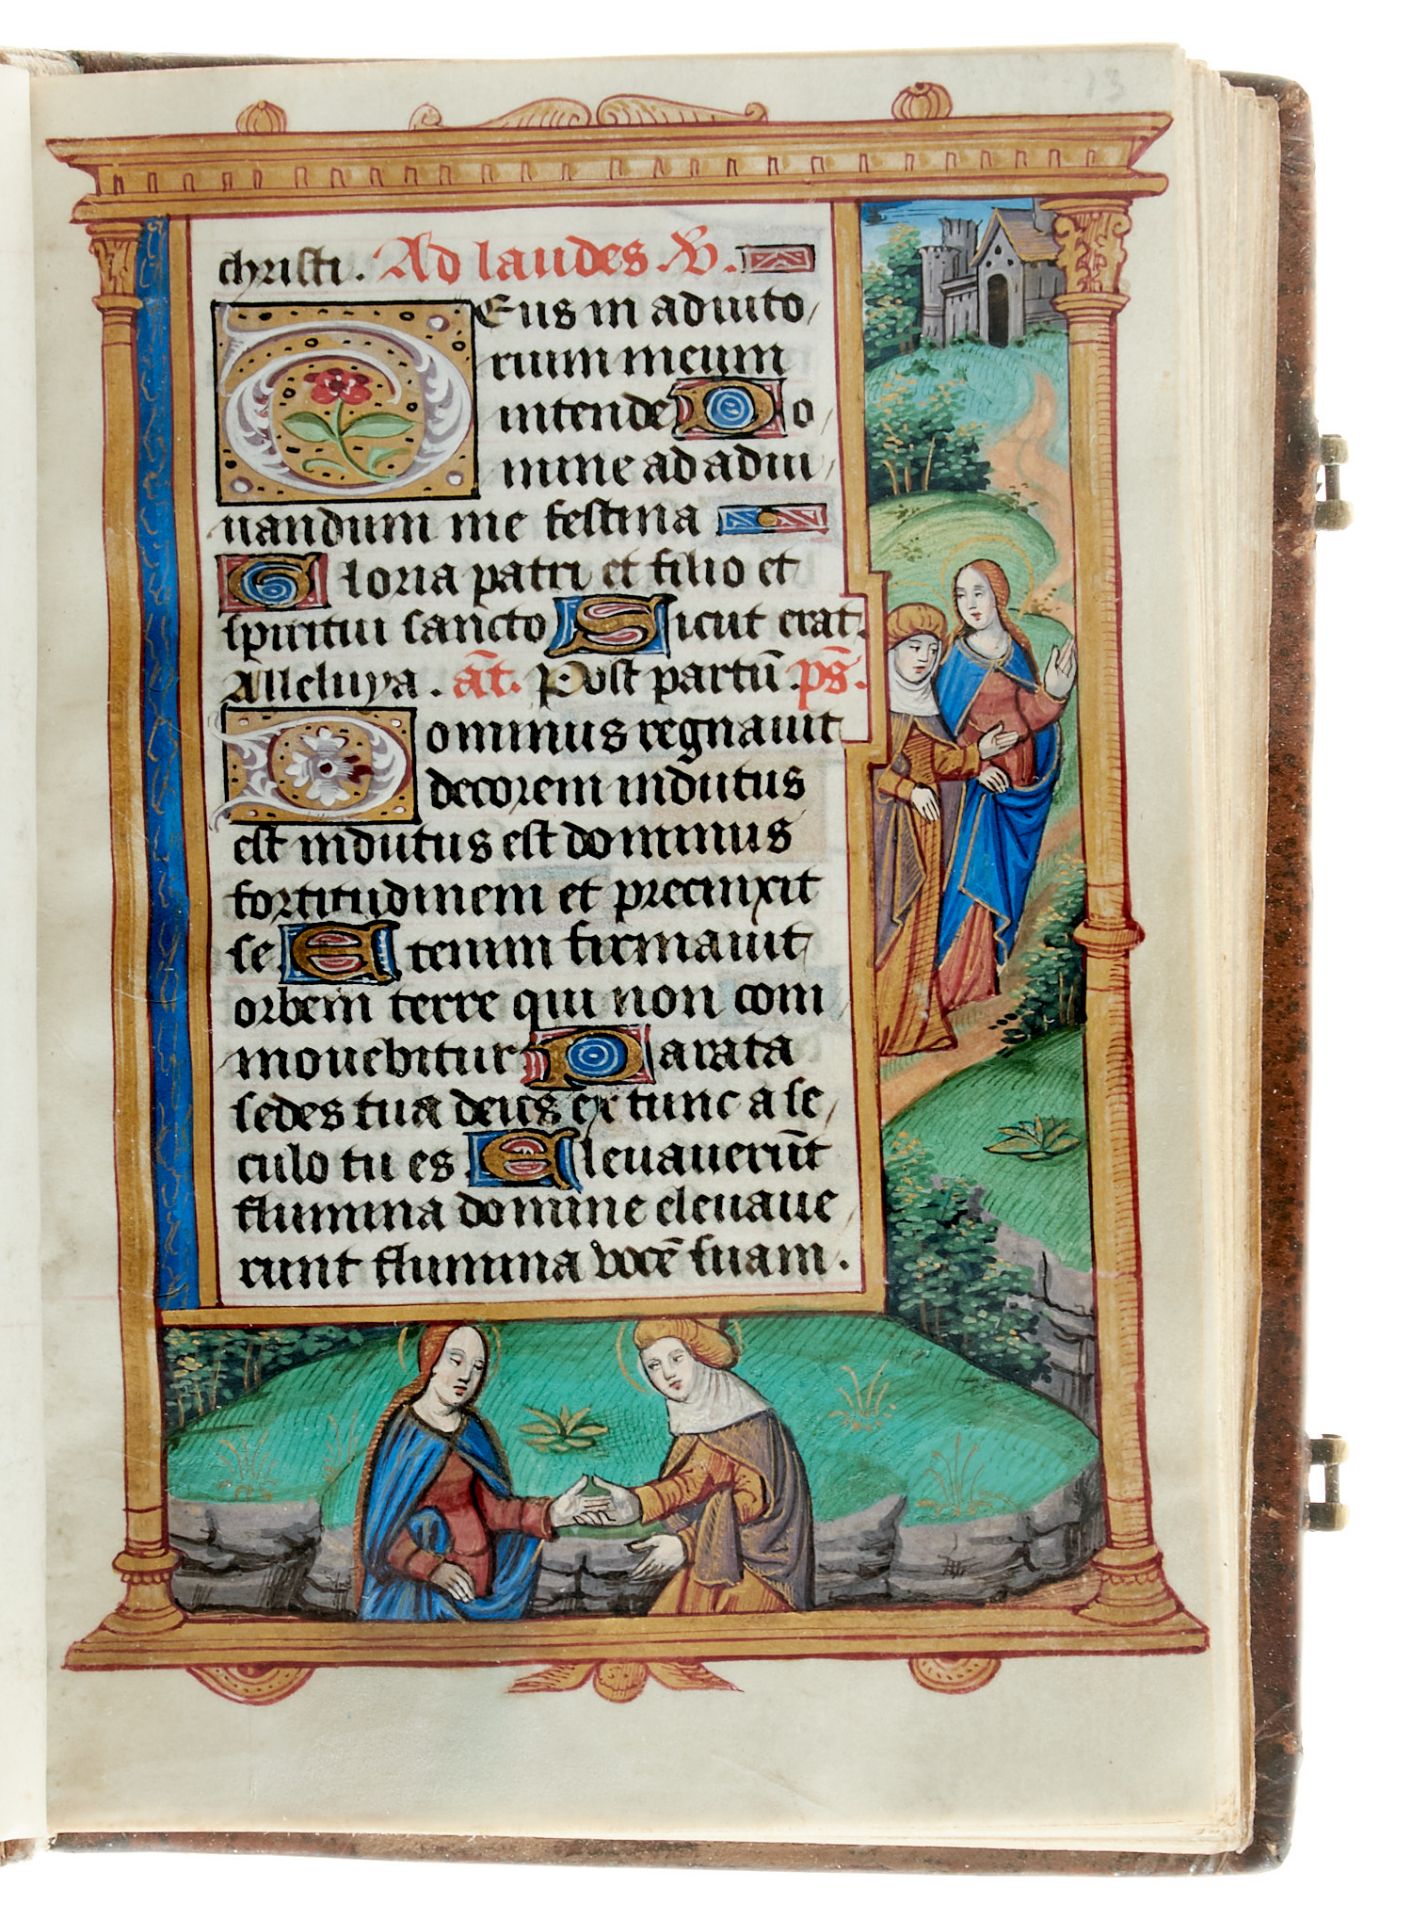 Pariser Stundenbuch. Lateinische Handschrift auf Pergament. Paris, um 1500. Ca. 14 x 10 cm. - Image 7 of 26